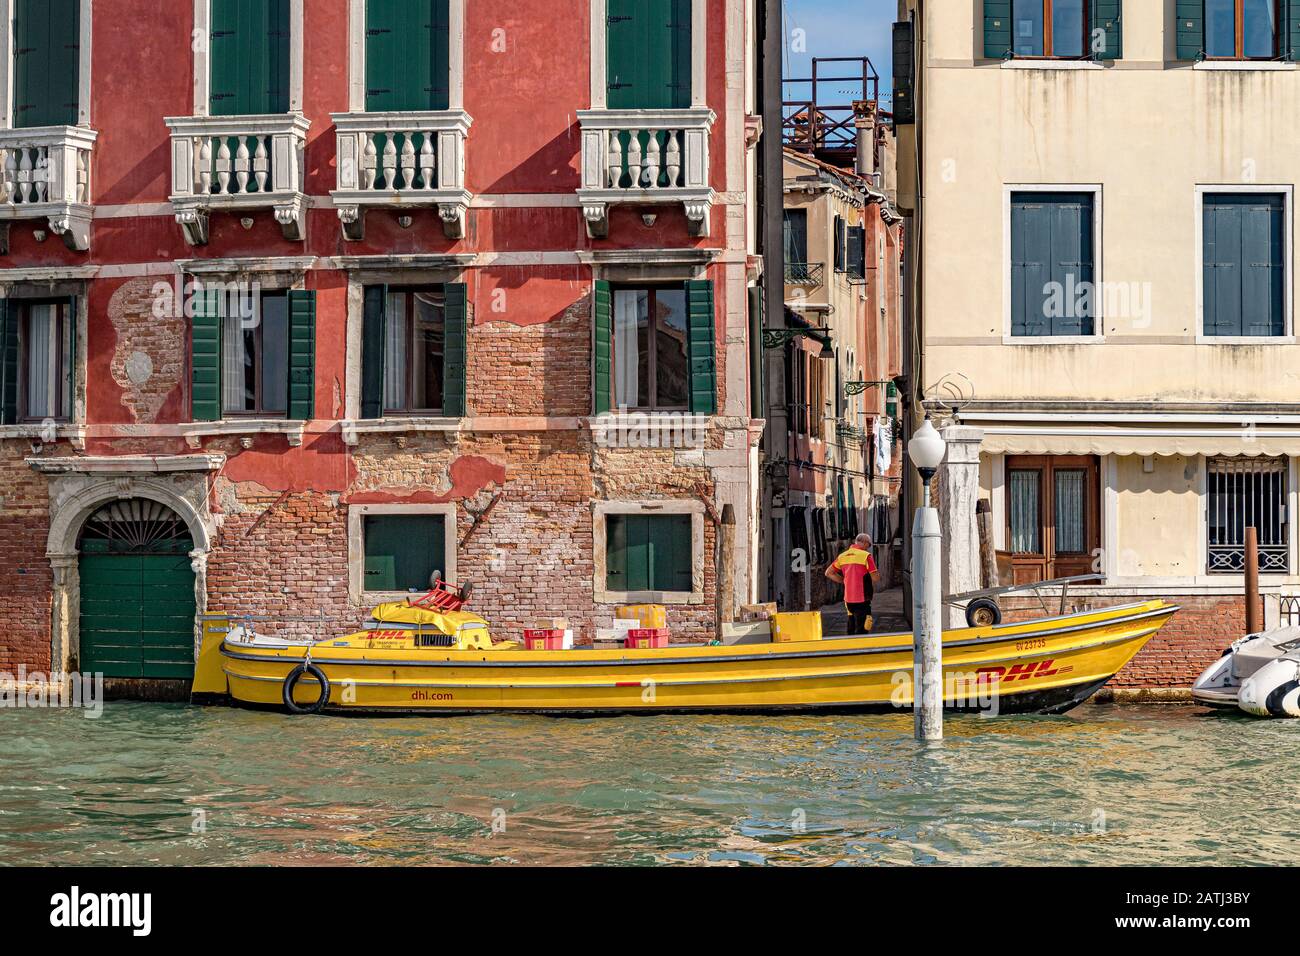 Un chauffeur de livraison DHL quitte son bateau de livraison DHL , rempli de colis et de colis fait ses livraisons autour des canaux de Venise, Italie Banque D'Images